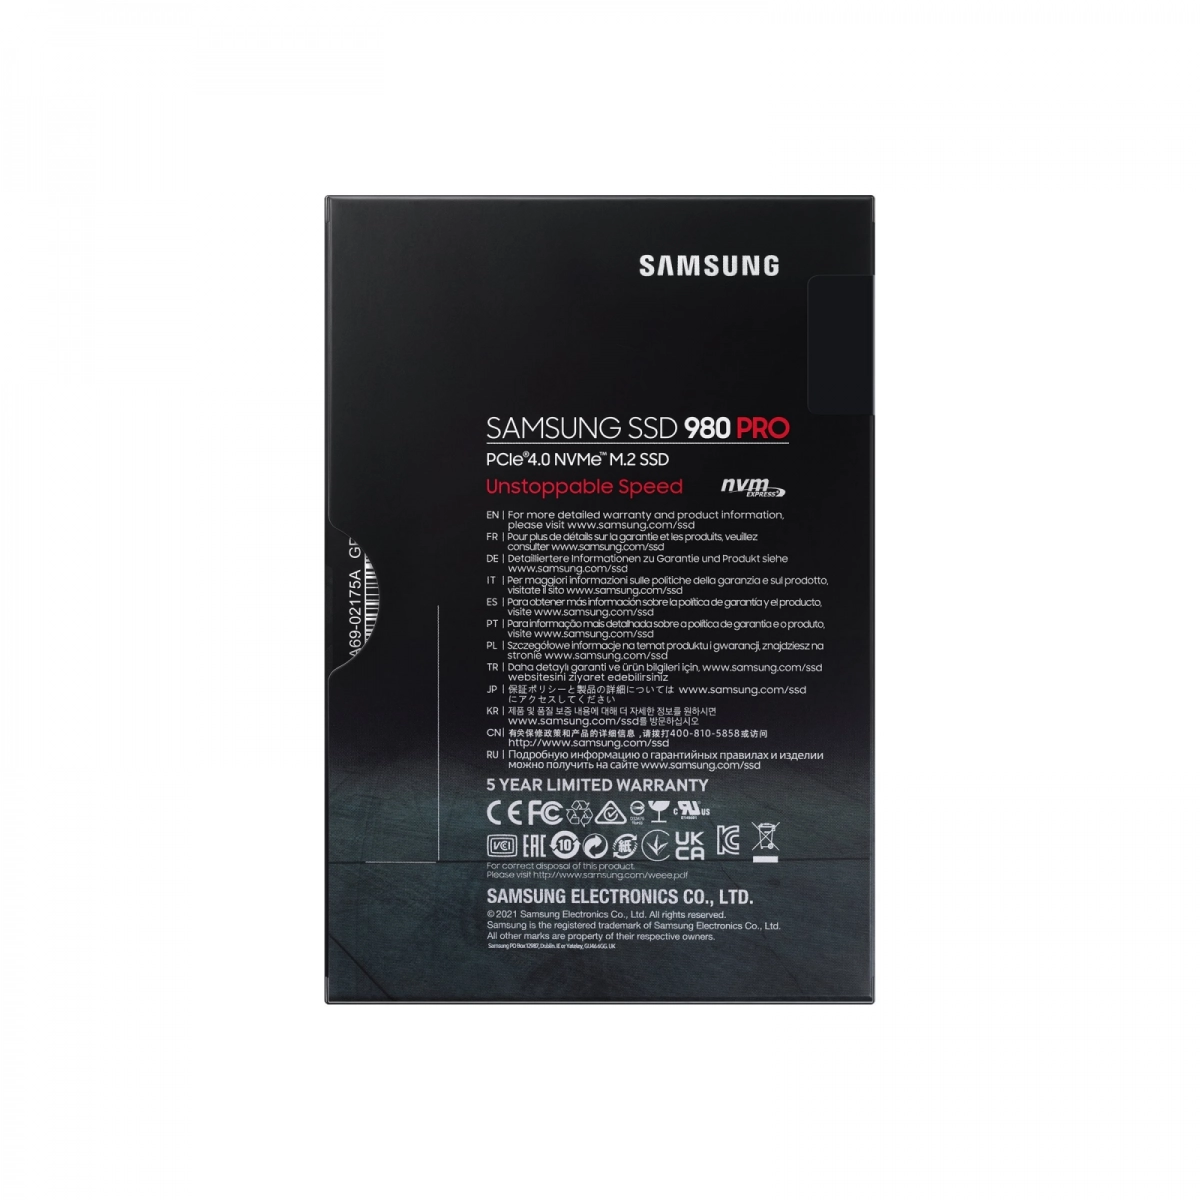 Sony Playstation 5 Festplatte 2TB SSD NVMe von Samsung